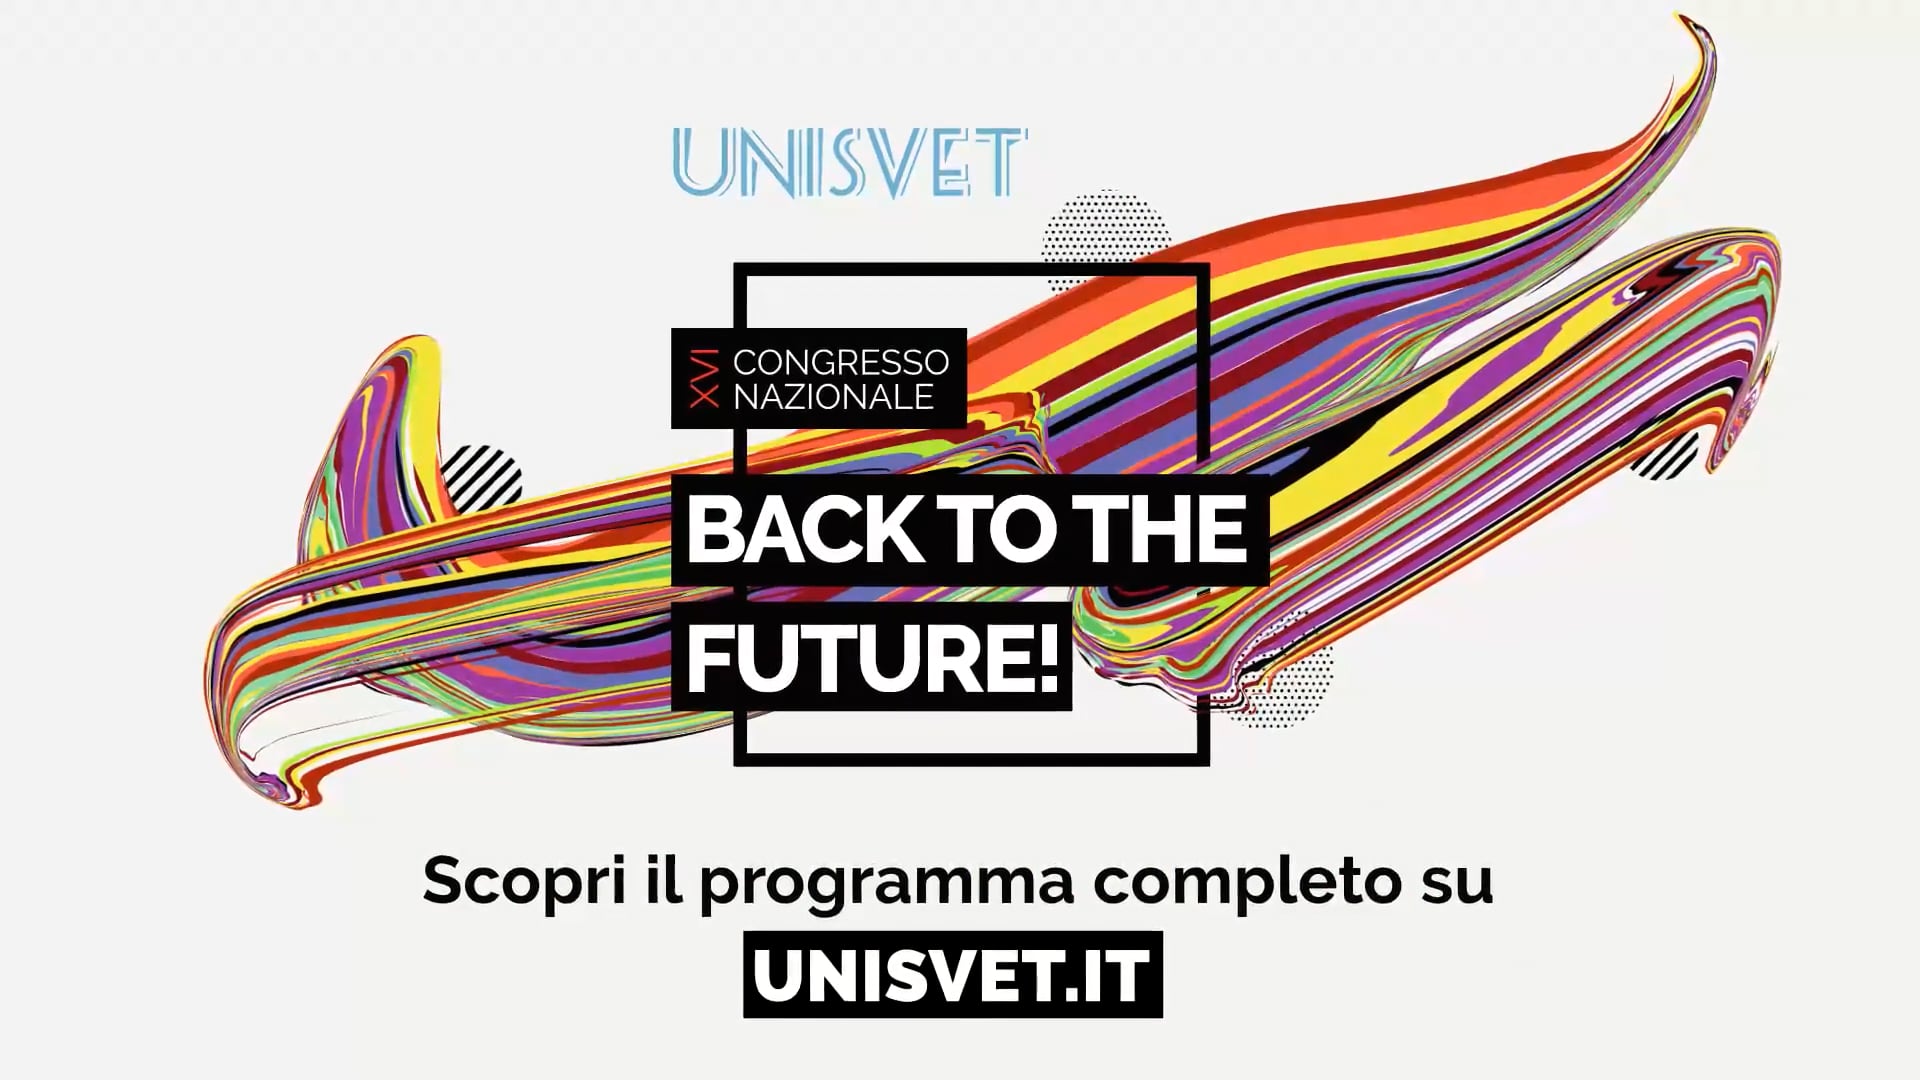 XVI Congresso Nazionale UNISVET - Back to the future!